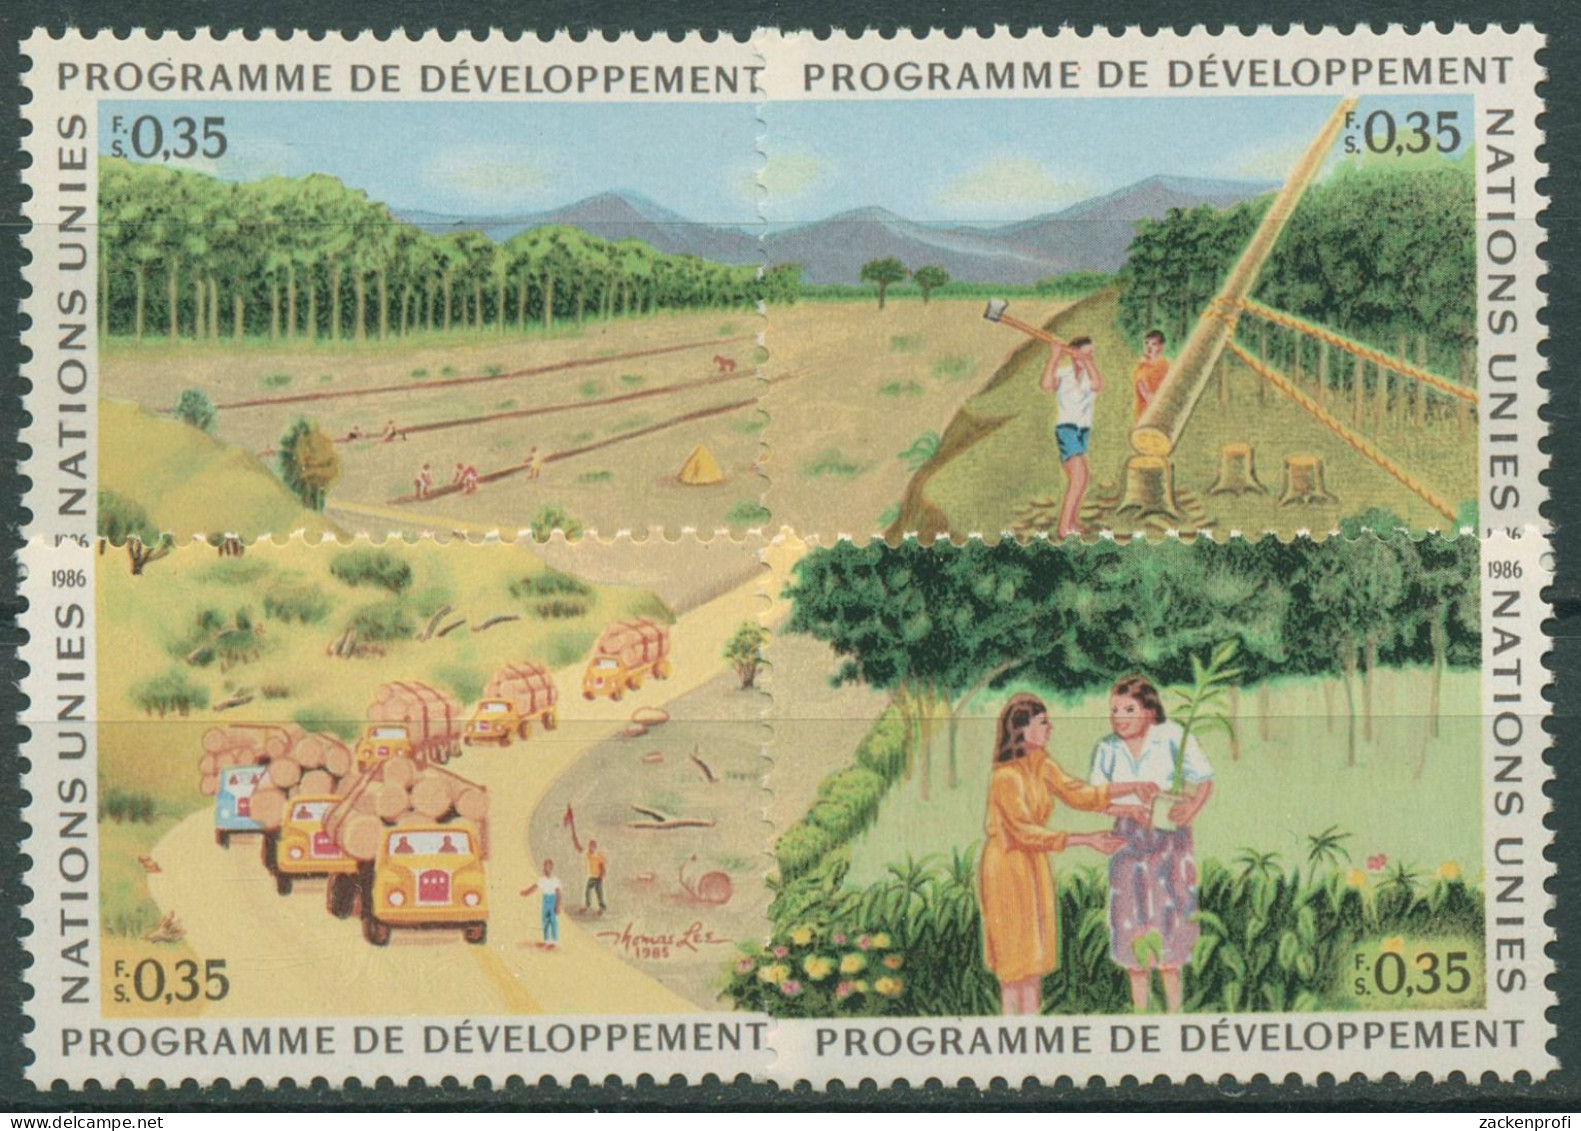 UNO Genf 1986 Entwicklungsprogramm Wald Aufforstung 138/41 Postfrisch - Ongebruikt